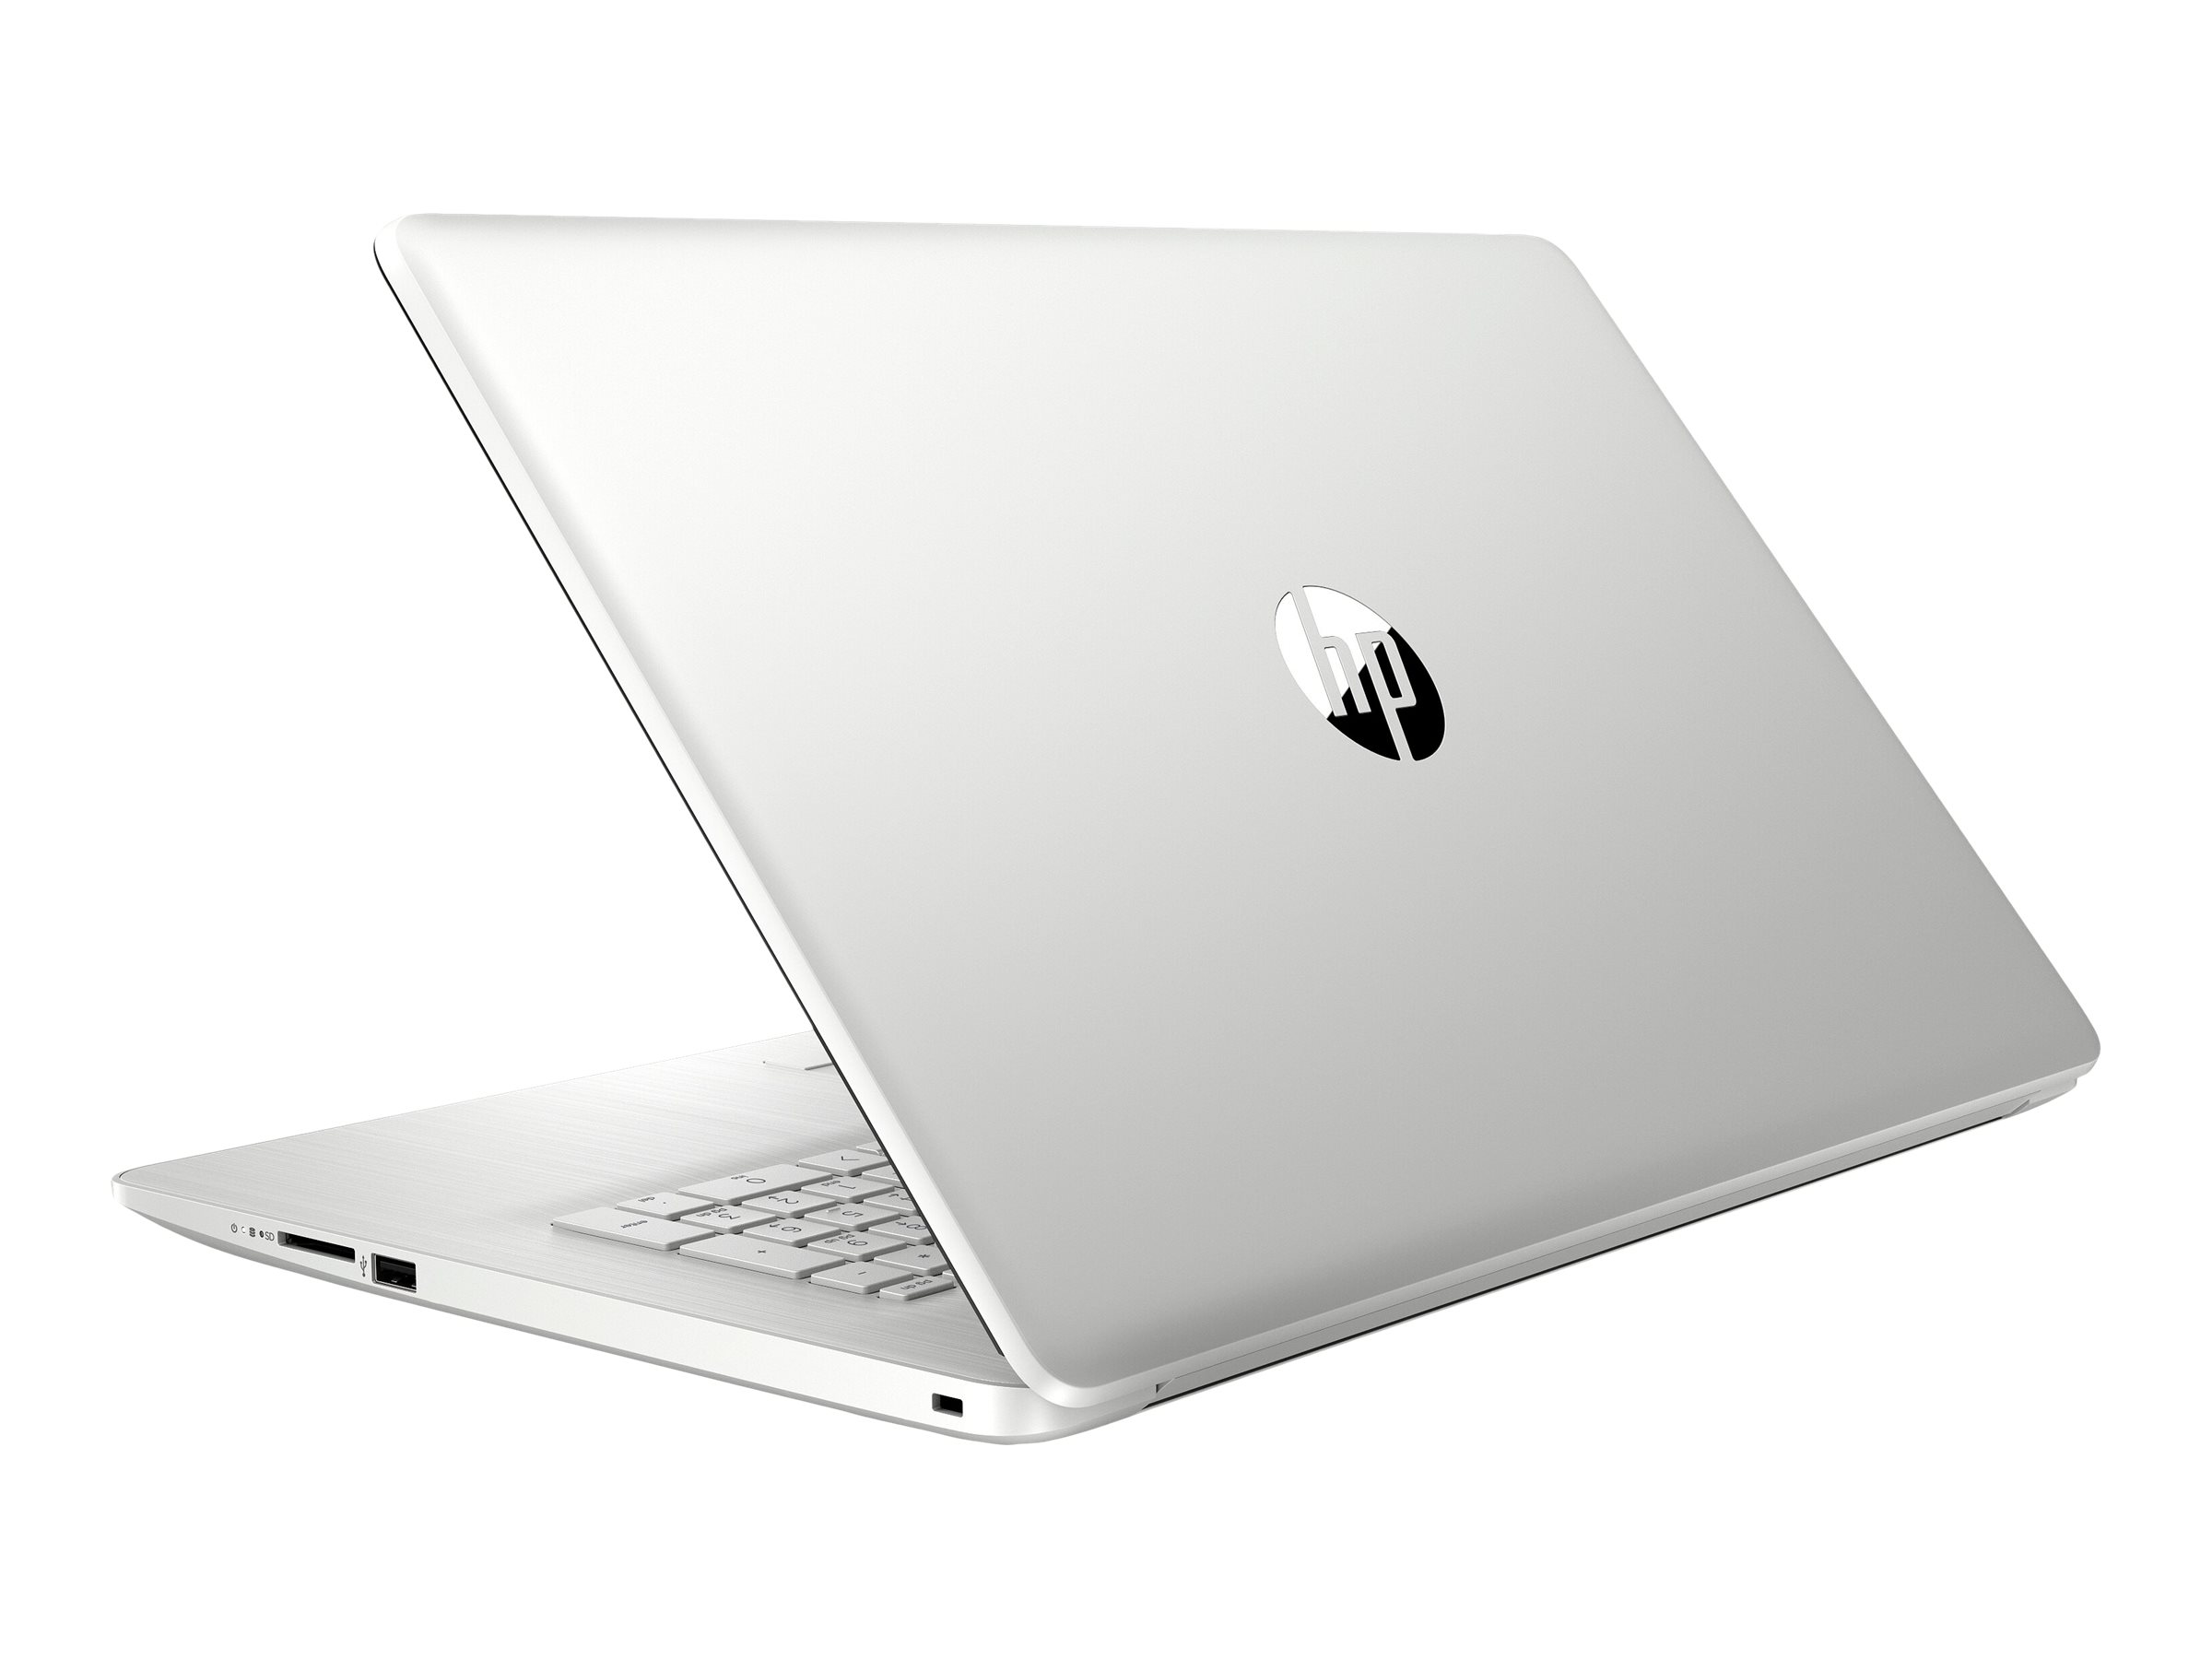 HP Laptop 17-ca3005nf - AMD Ryzen 5 - 4500U / jusqu'à 4 GHz - Win 10 Familiale 64 bits - Radeon Graphics - 8 Go RAM - 128 Go SSD + 1 To HDD - 17.3" 1600 x 900 (HD+) - Wi-Fi 5 - argent naturel, cadre de clavier de motif brossé vertical, couvercle et cadre du clavier moulés par injection, finition de base brillante - clavier : Français - avec HP 2 years Pickup and Return Bundled Warranty Extension for Low End Notebooks - 34Z06EA#ABF - Ordinateurs portables